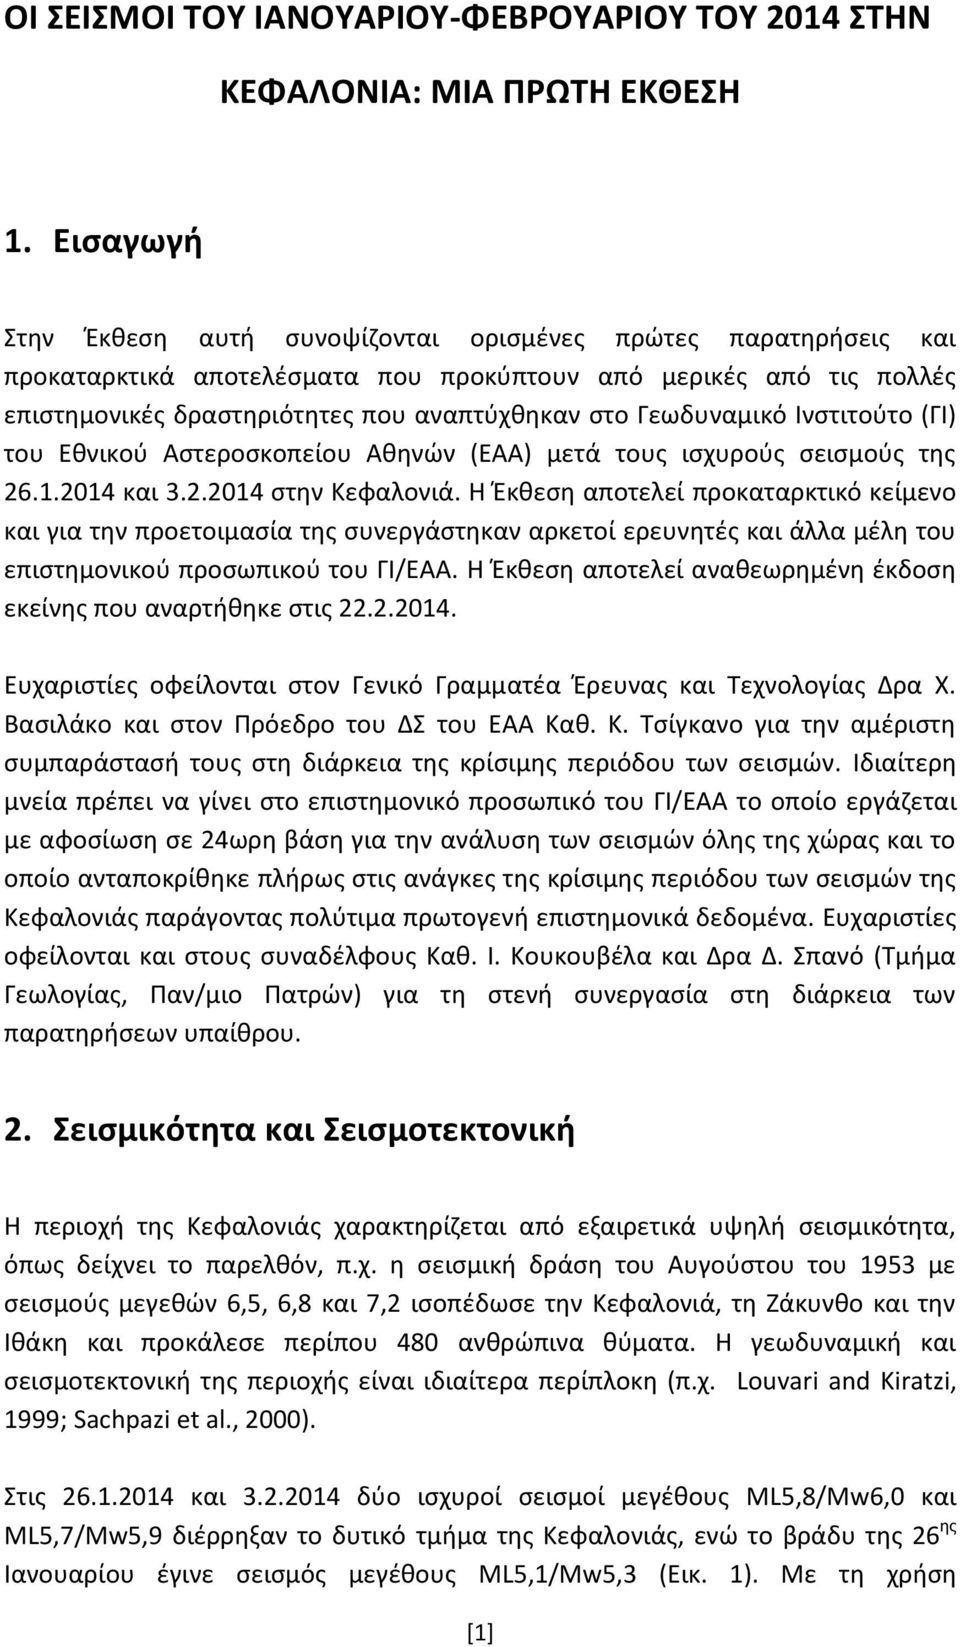 Γεωδυναμικό Ινστιτούτο (ΓΙ) του Εθνικού Αστεροσκοπείου Αθηνών (ΕΑΑ) μετά τους ισχυρούς σεισμούς της 26.1.2014 και 3.2.2014 στην Κεφαλονιά.